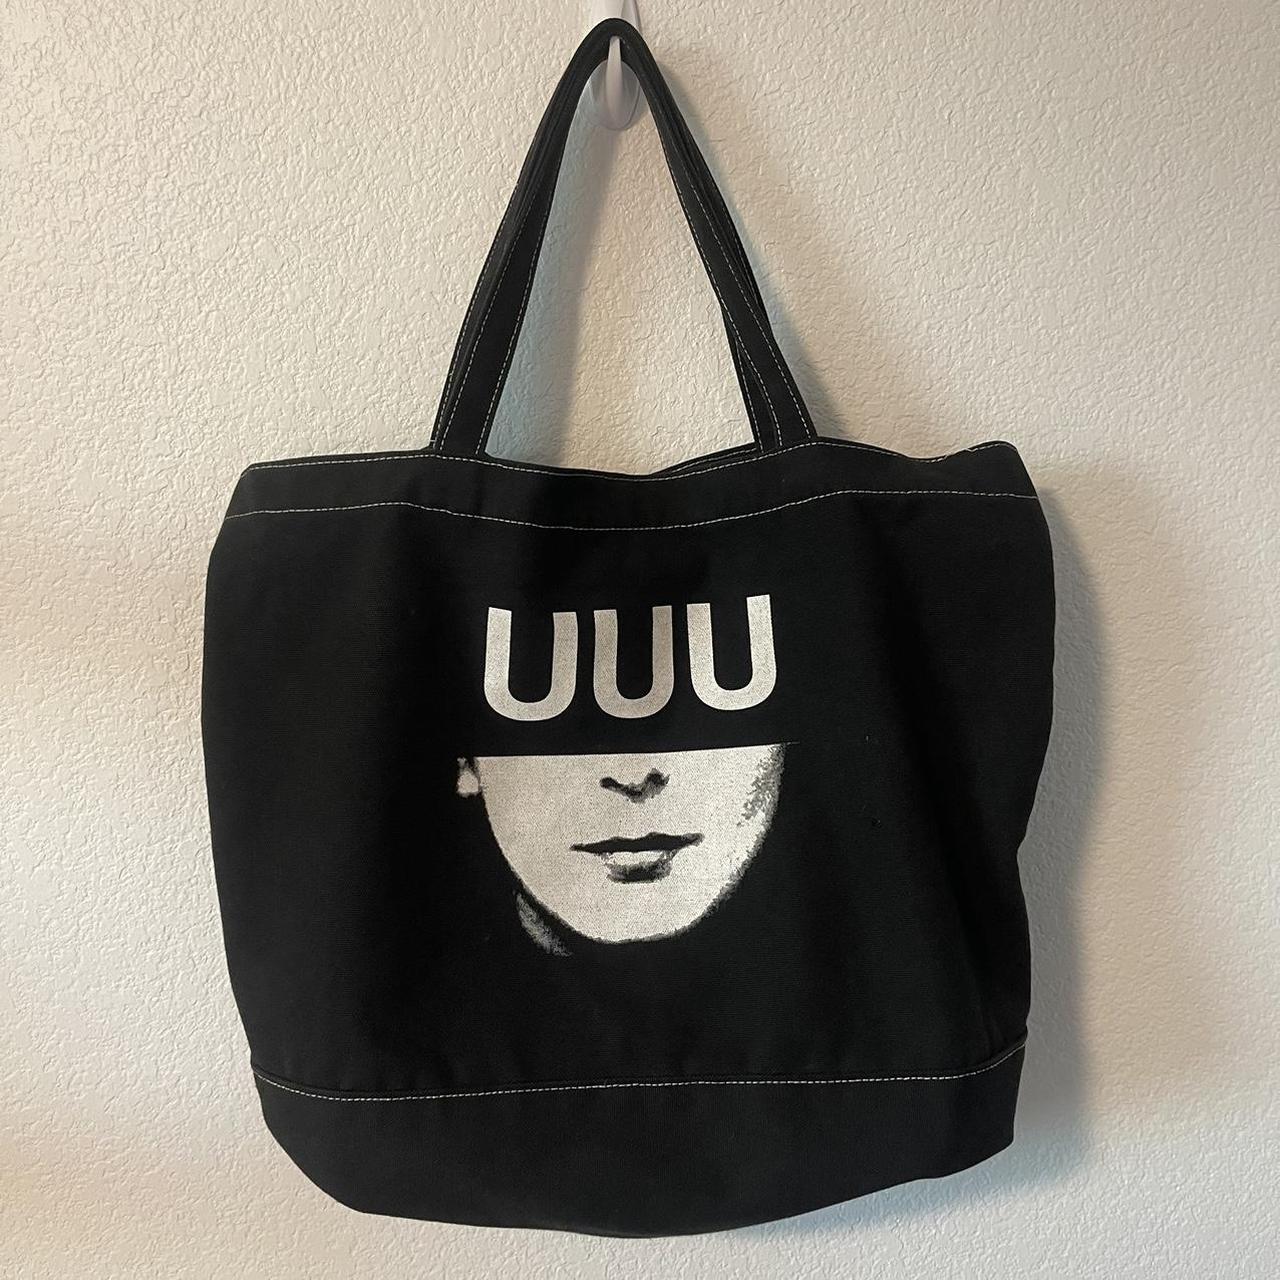 卸売価格の販売 Undercover uuu 2way bag - バッグ